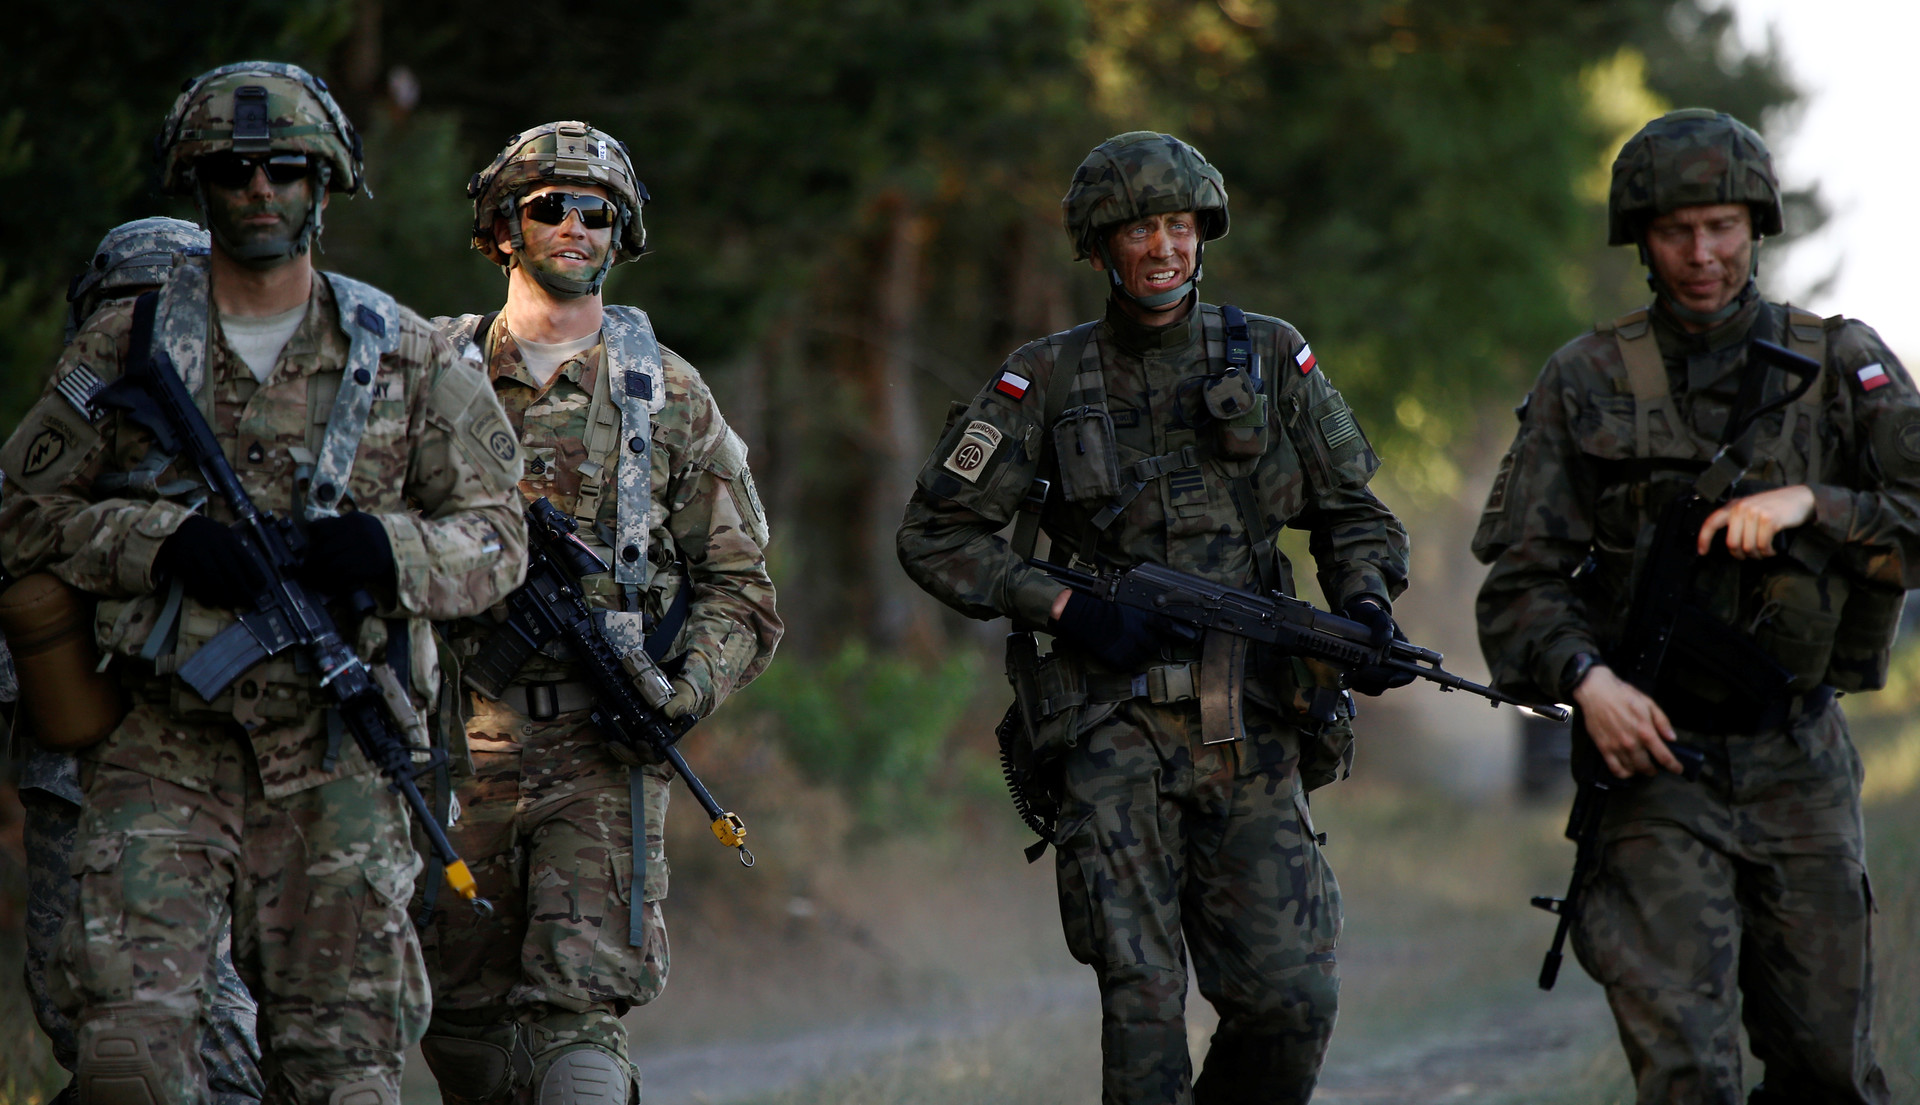 Soldados polacos marchan junto con soldados estadounidenses durante los ejercicios militares Anakonda 16 cerca de Torun, Polonia, 7 de junio de 2016.